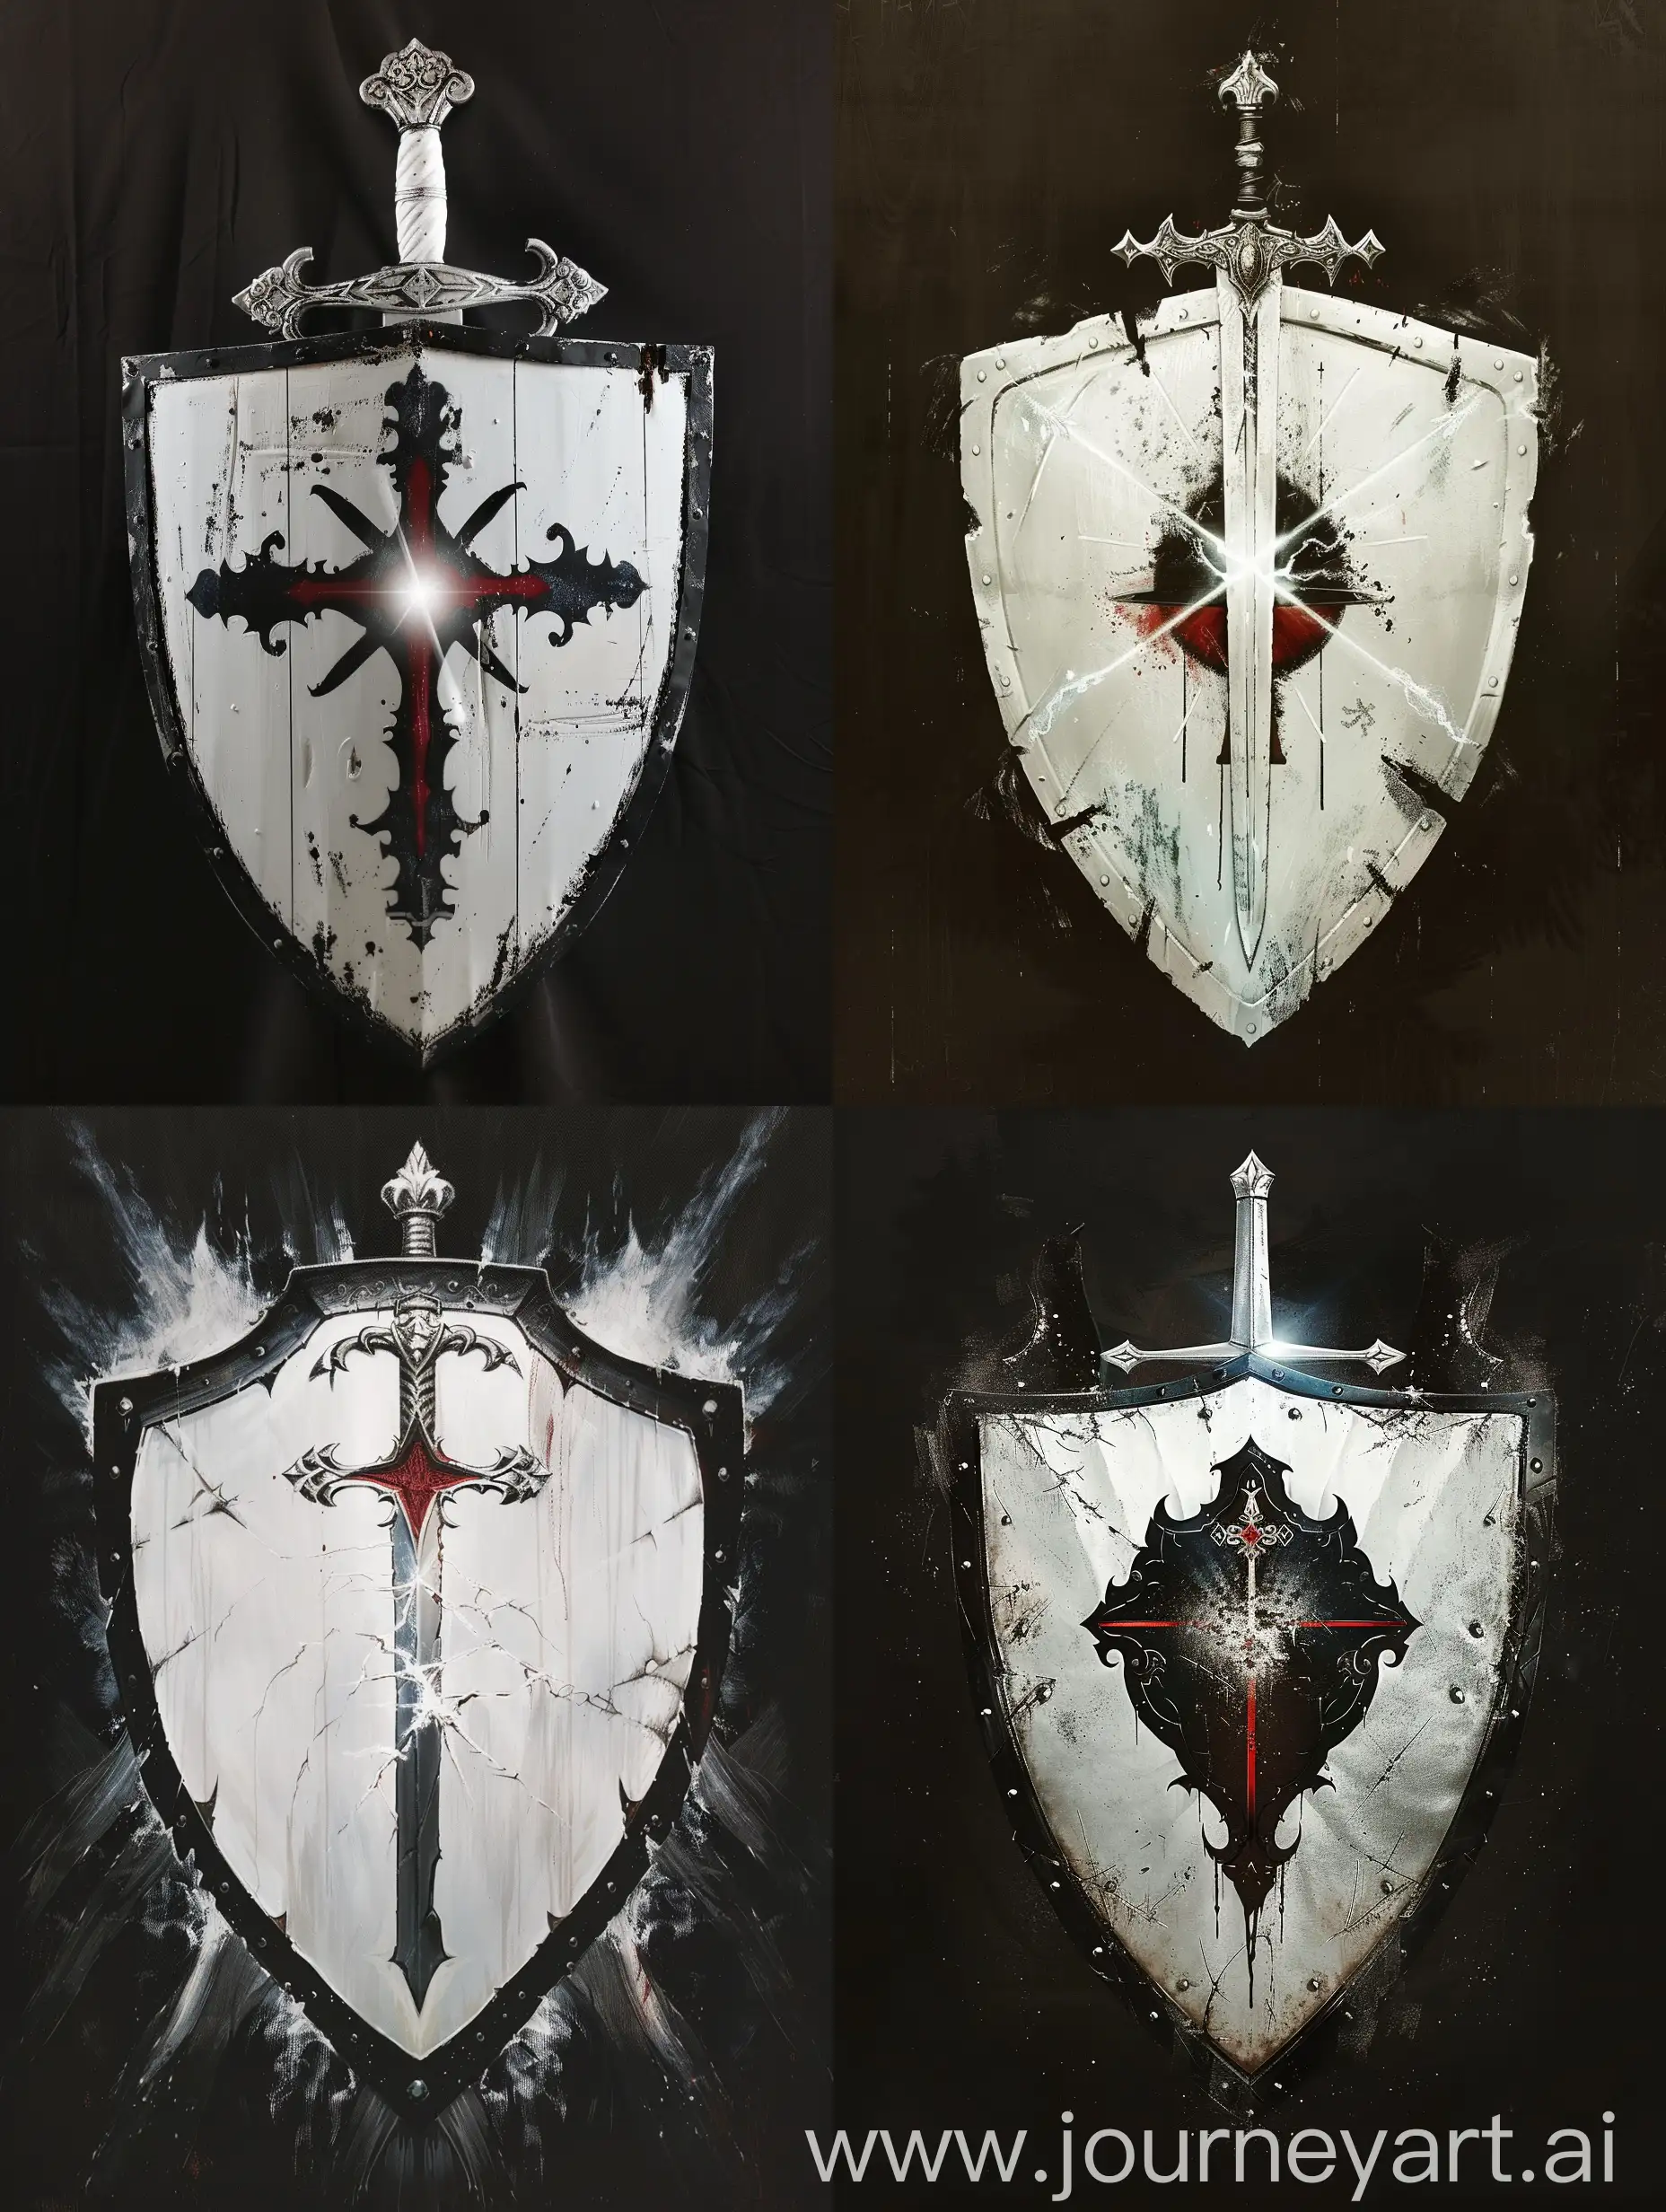 Белый щит с черными краями, за щитом серебряный меч а, меч держат латные перчатки белого цвета, на щите изображён красный крест от которого исходит белый свет. 

